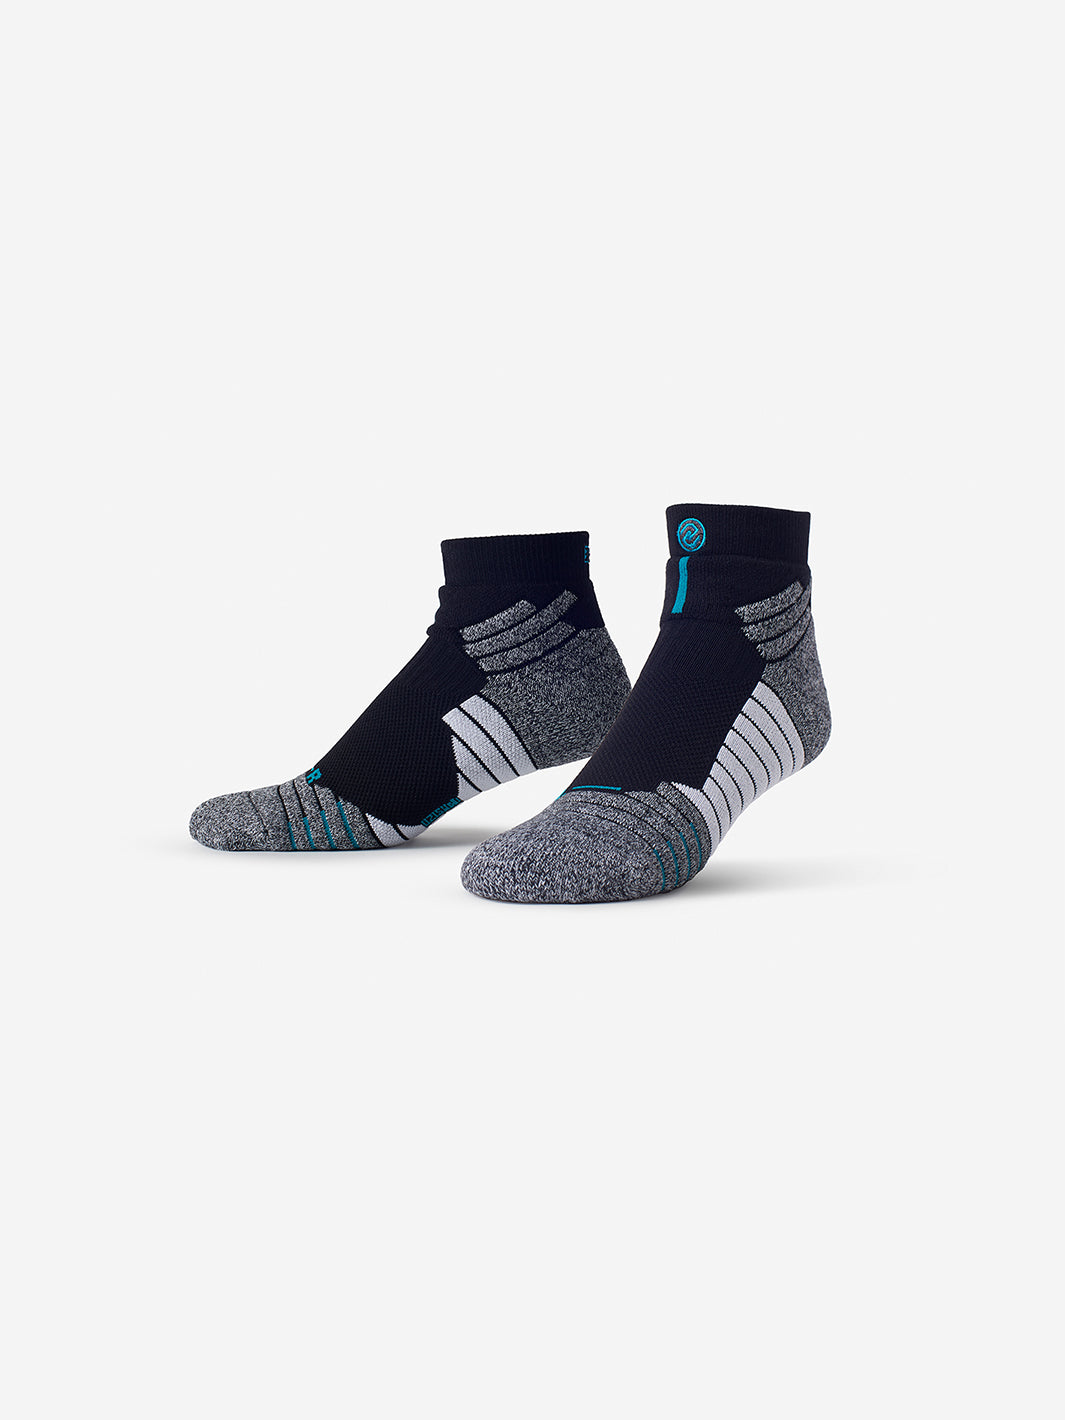 Black Athletic Sport Ankle Sock by SMRTFT